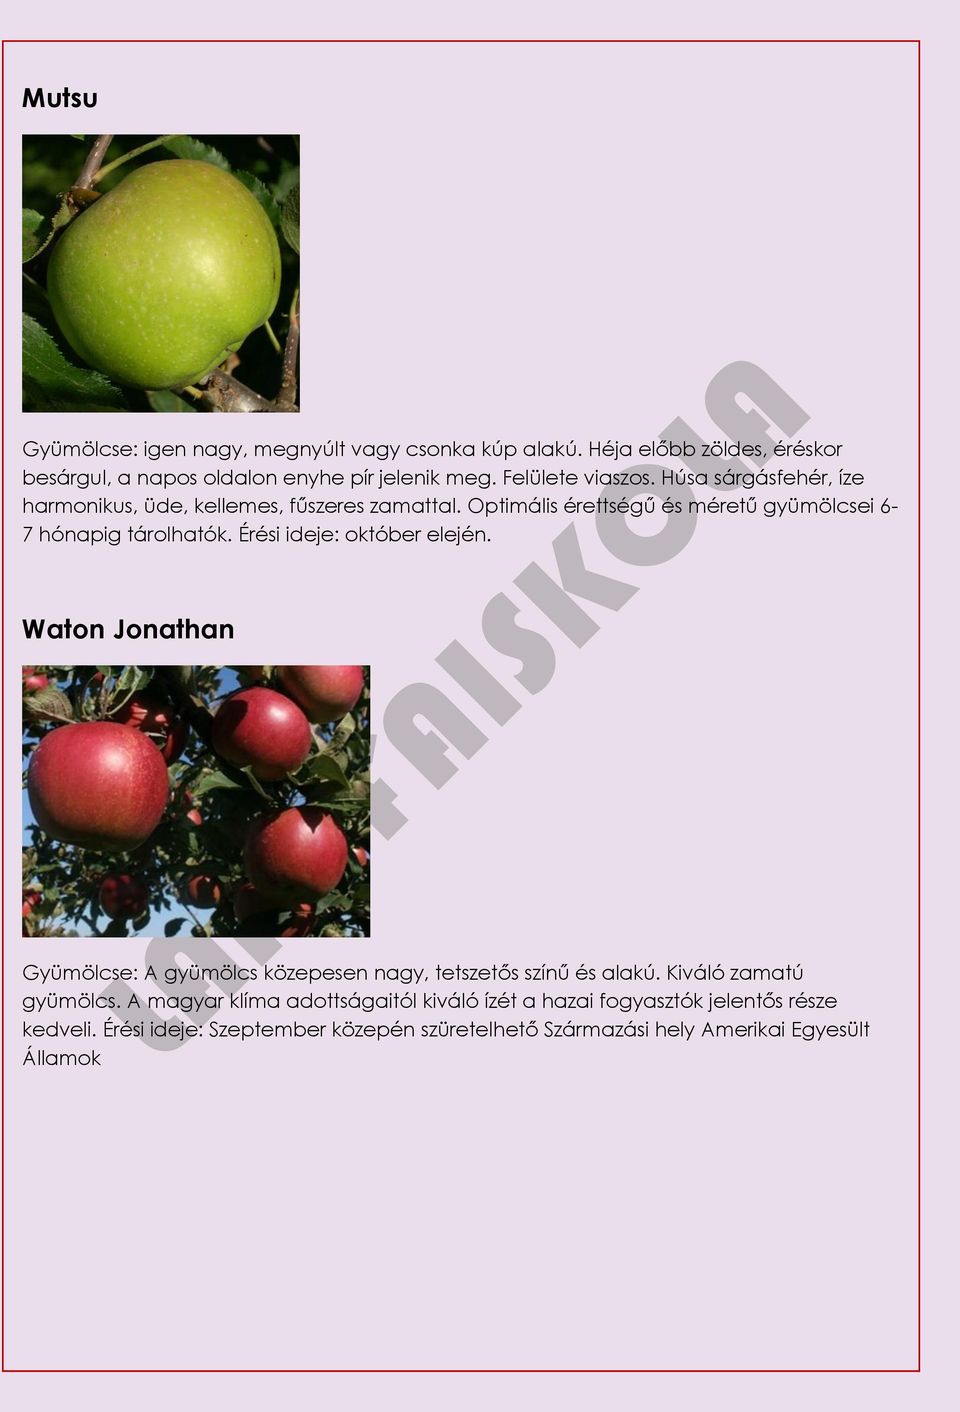 Optimális érettségű és méretű gyümölcsei 6-7 hónapig tárolhatók. Érési ideje: október elején.